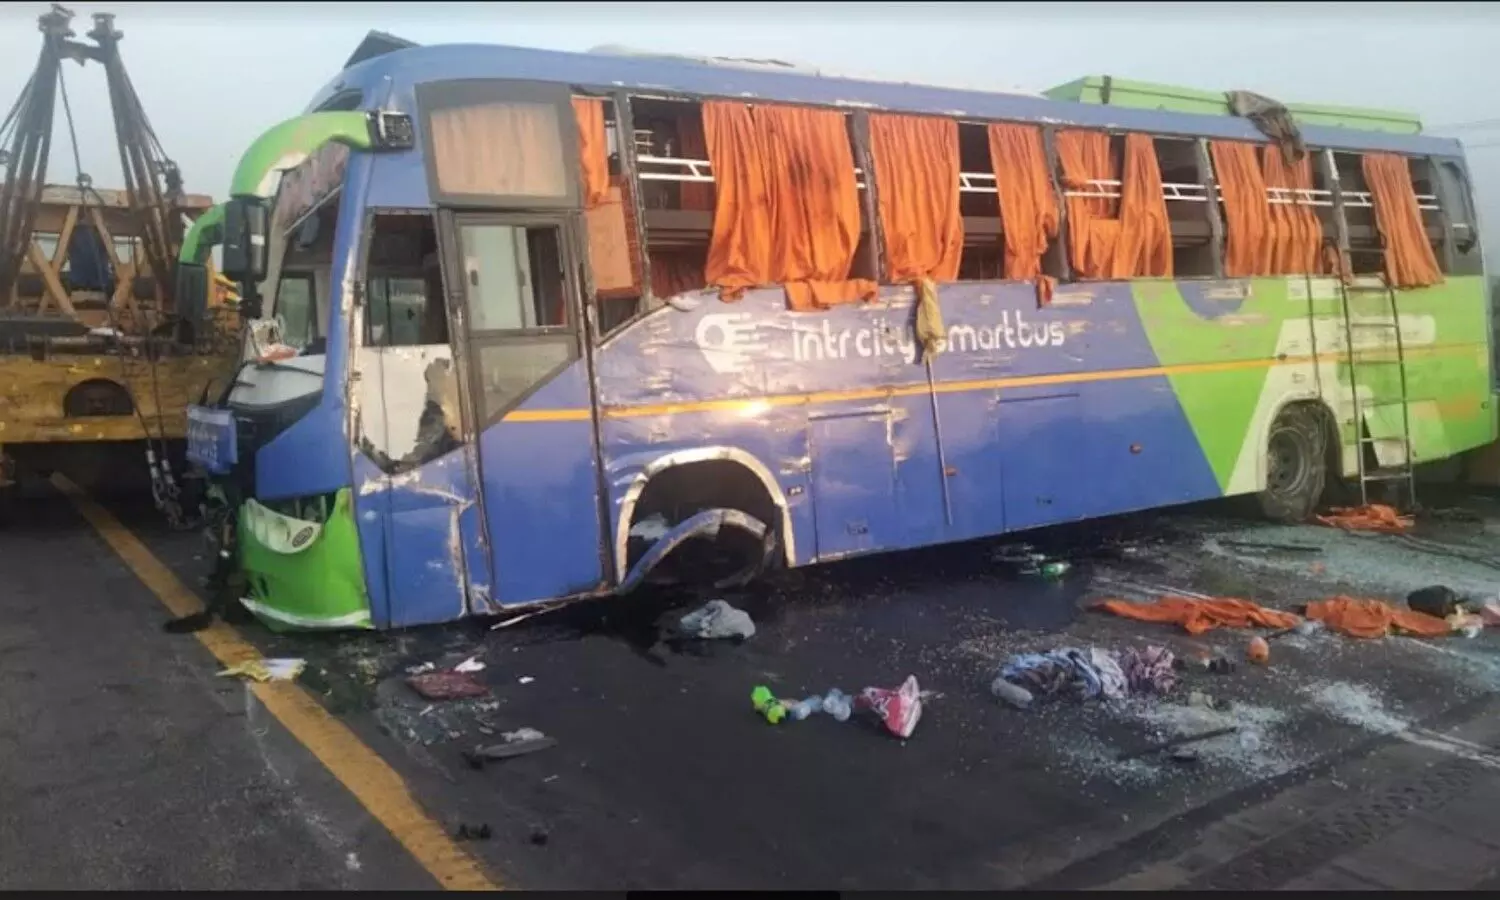 Firozabad Bus Accident